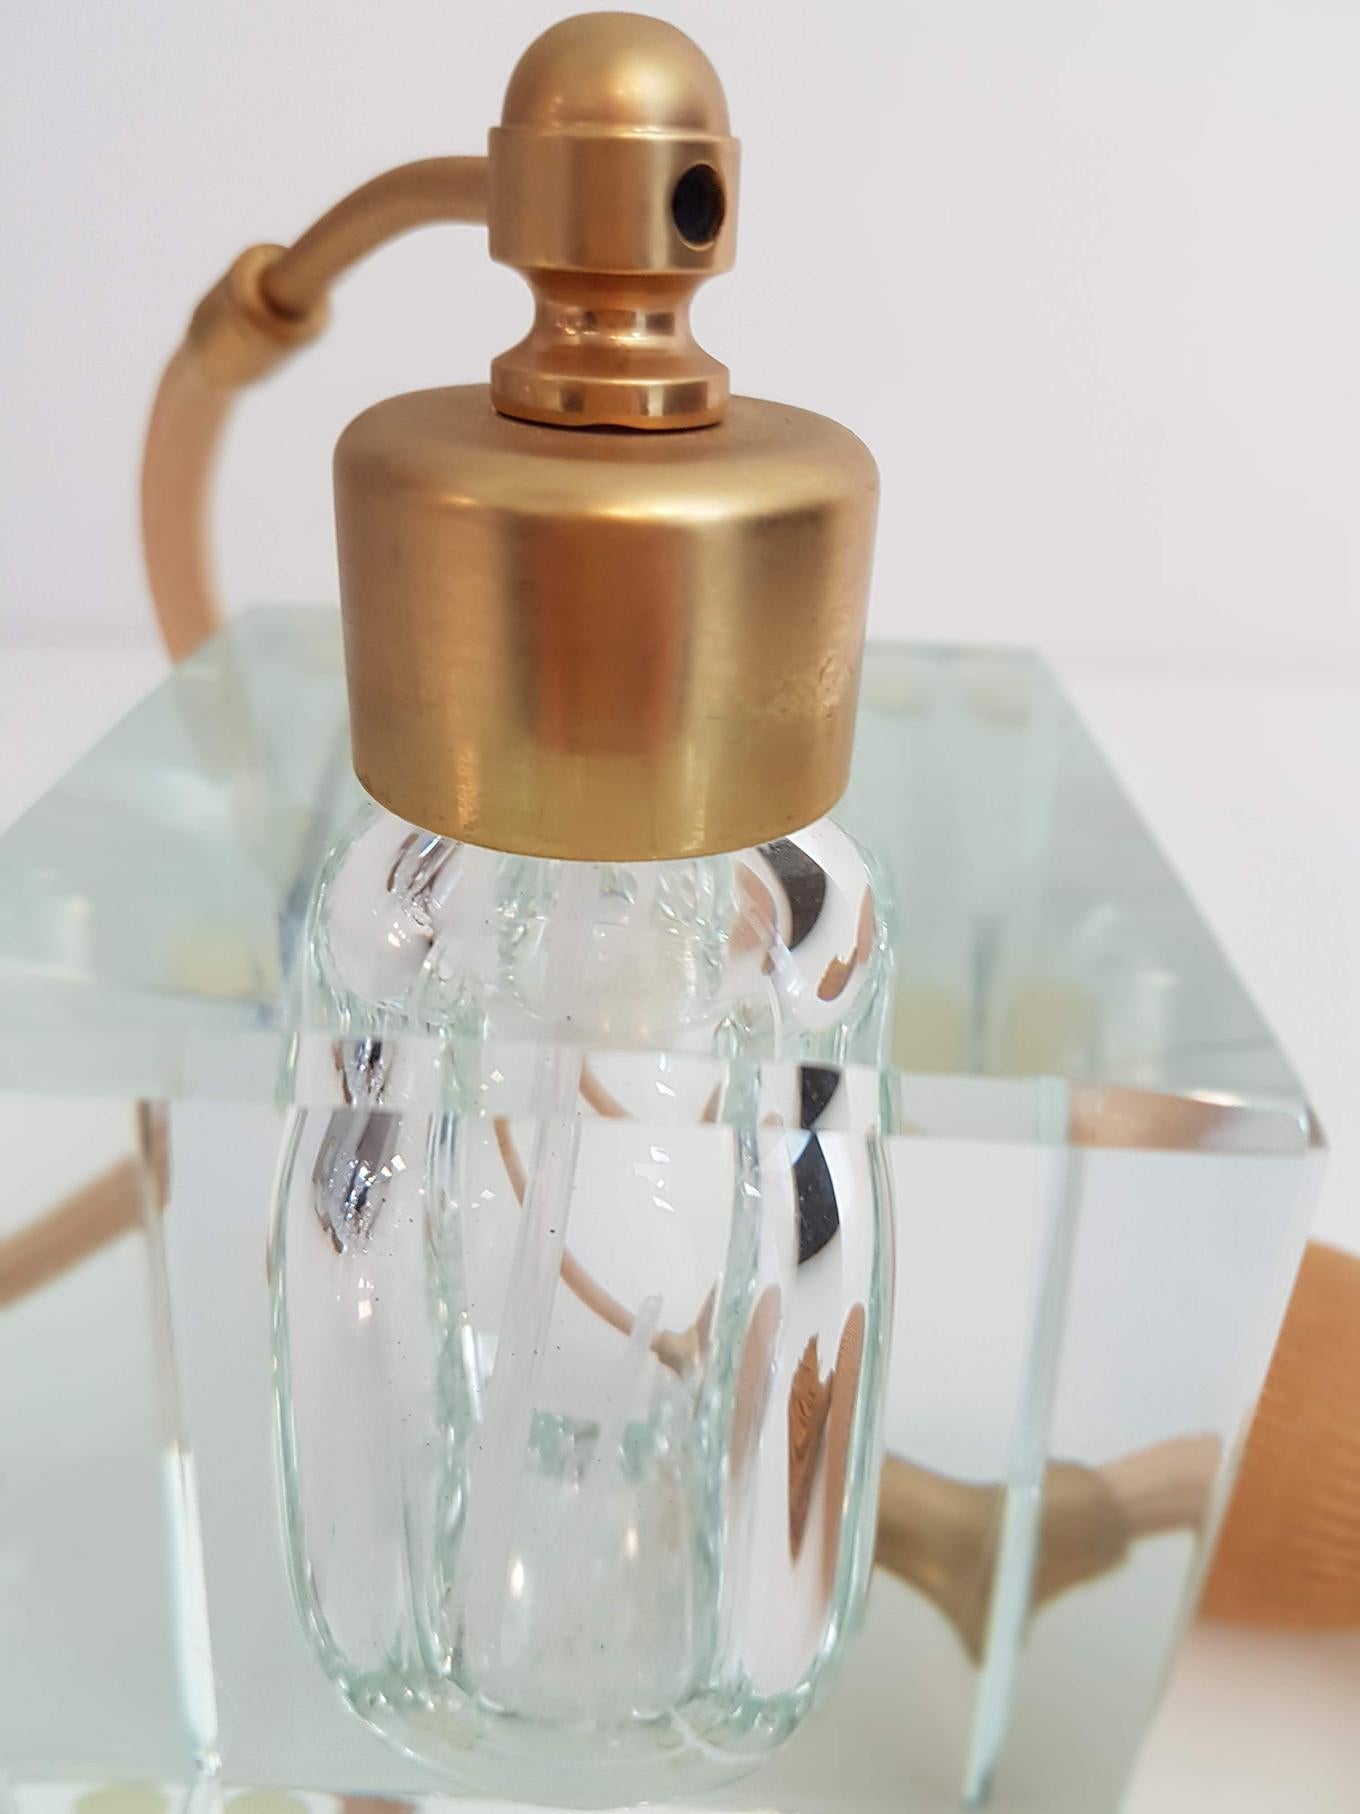 Czech Perfume Bottle Gilt Brass and Glass by Moser